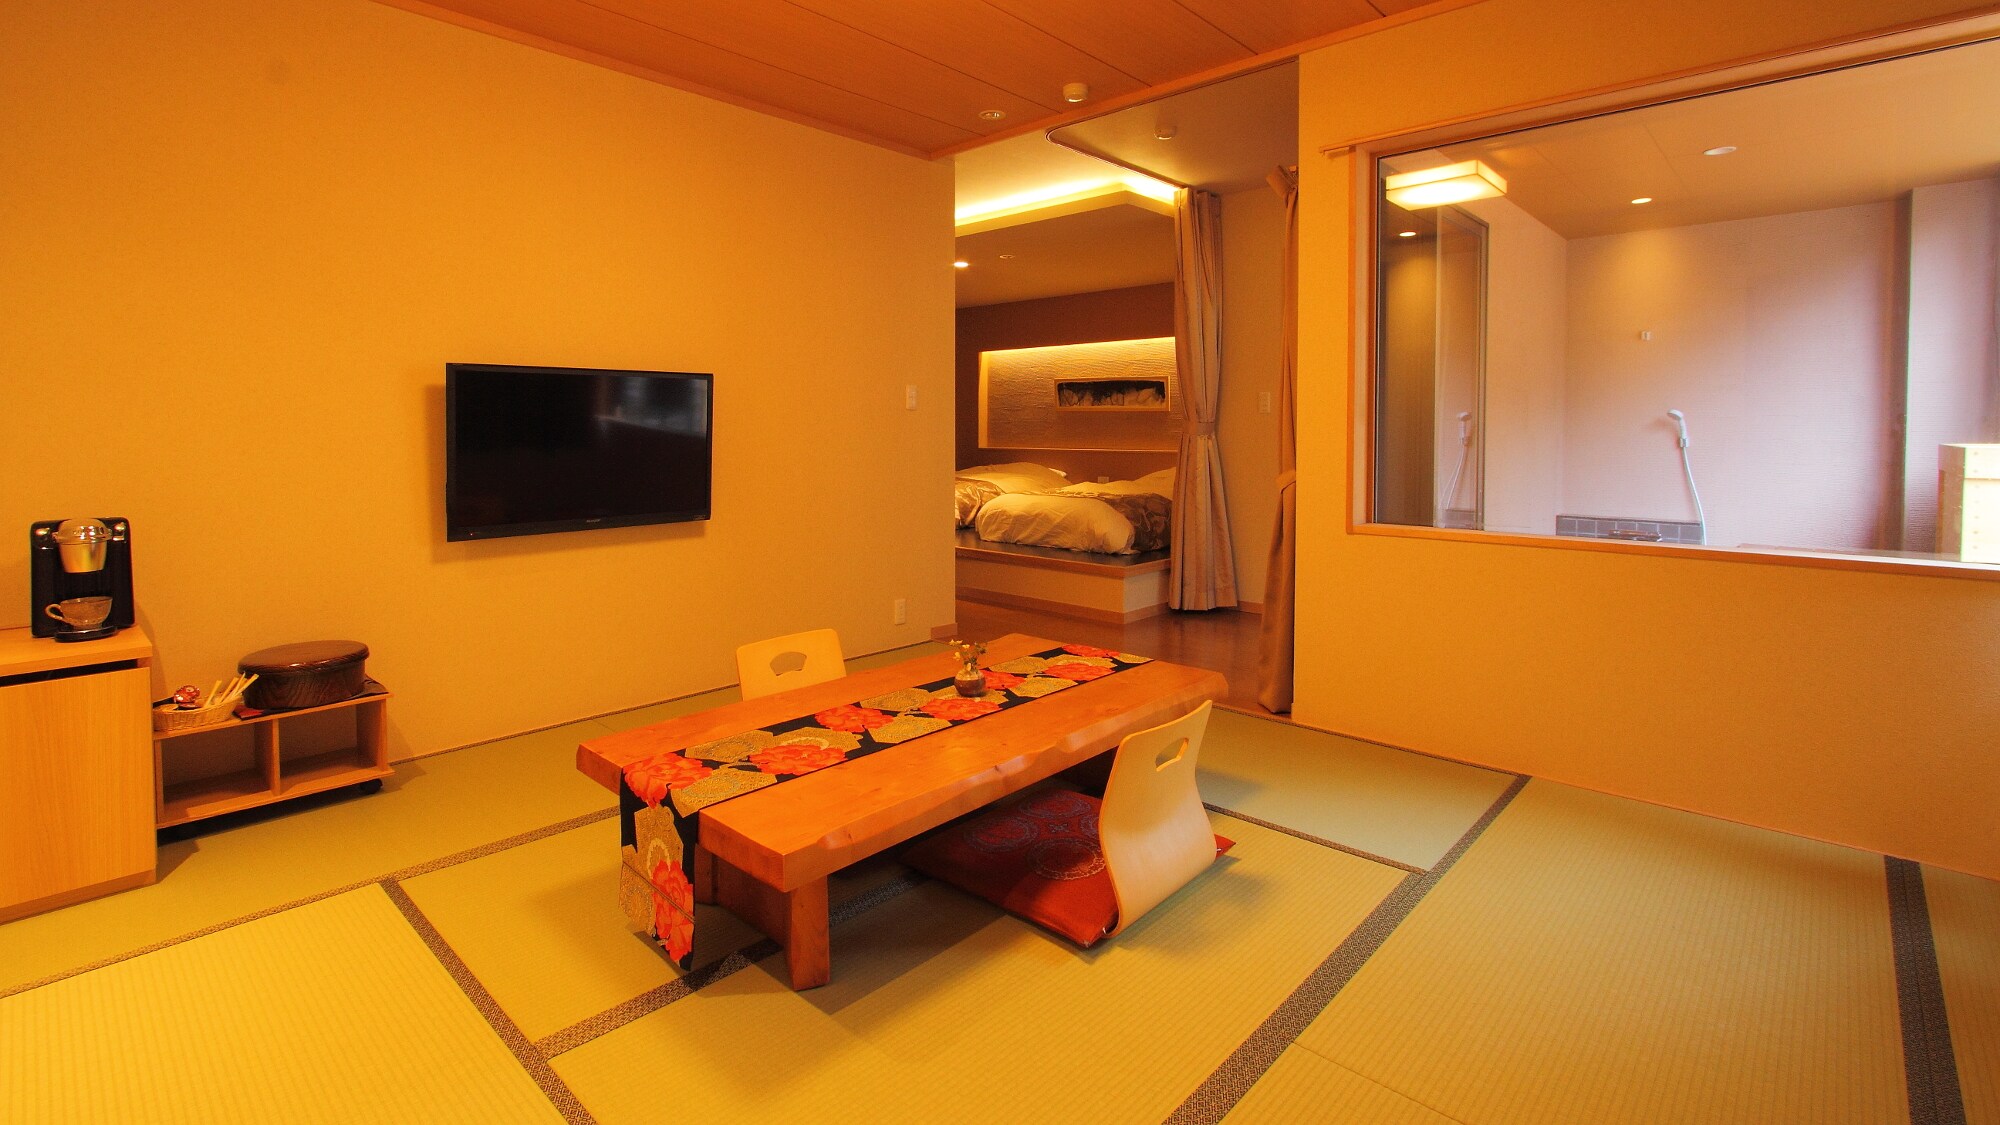 An example of a suite with an open-air hot spring bath (Shosei / Kosei)